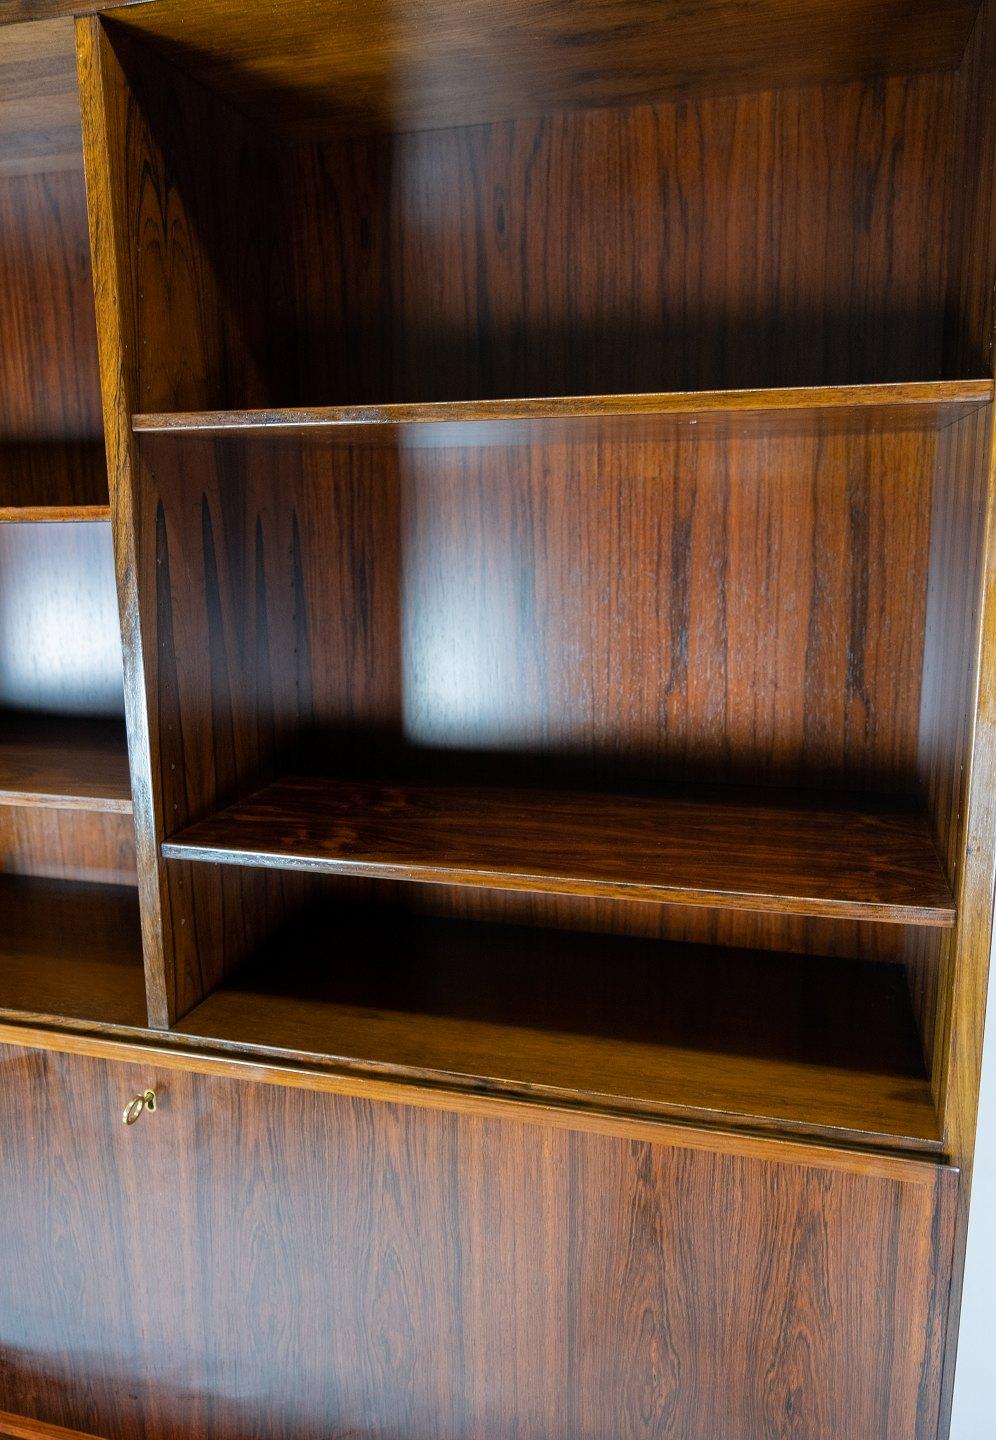 Obtenez une pièce authentique de l'histoire du mobilier danois avec cette magnifique bibliothèque avec secrétaire en bois de rose, modèle no. 9, conçue par Design/One Junior dans les années 1960. Cette bibliothèque est un excellent exemple de